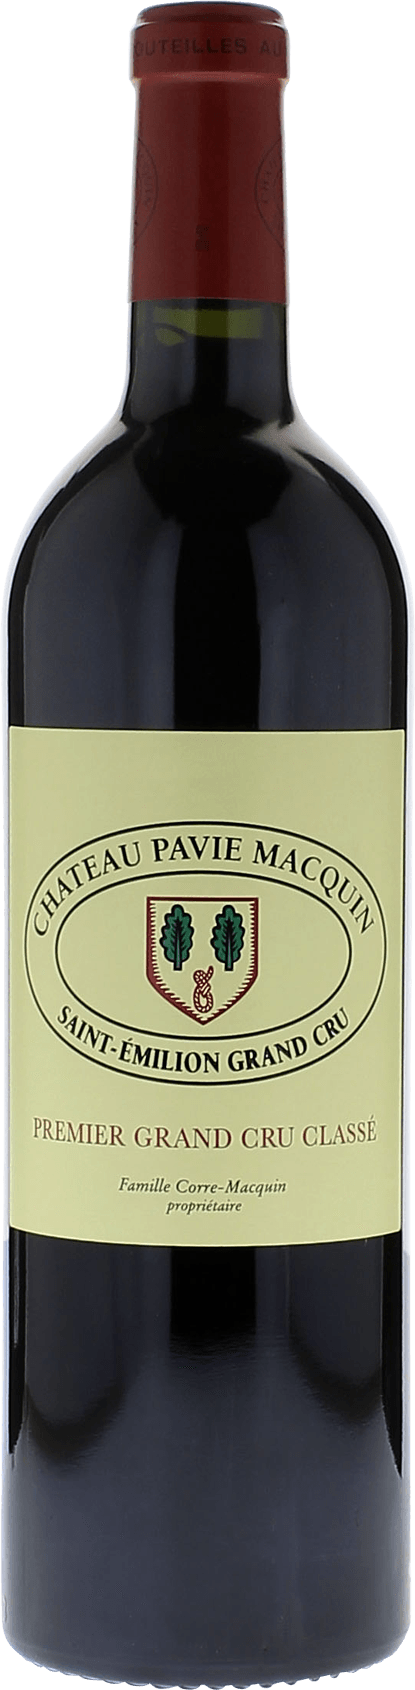 Pavie macquin 2017 1er Grand cru B class Saint-Emilion, Bordeaux rouge